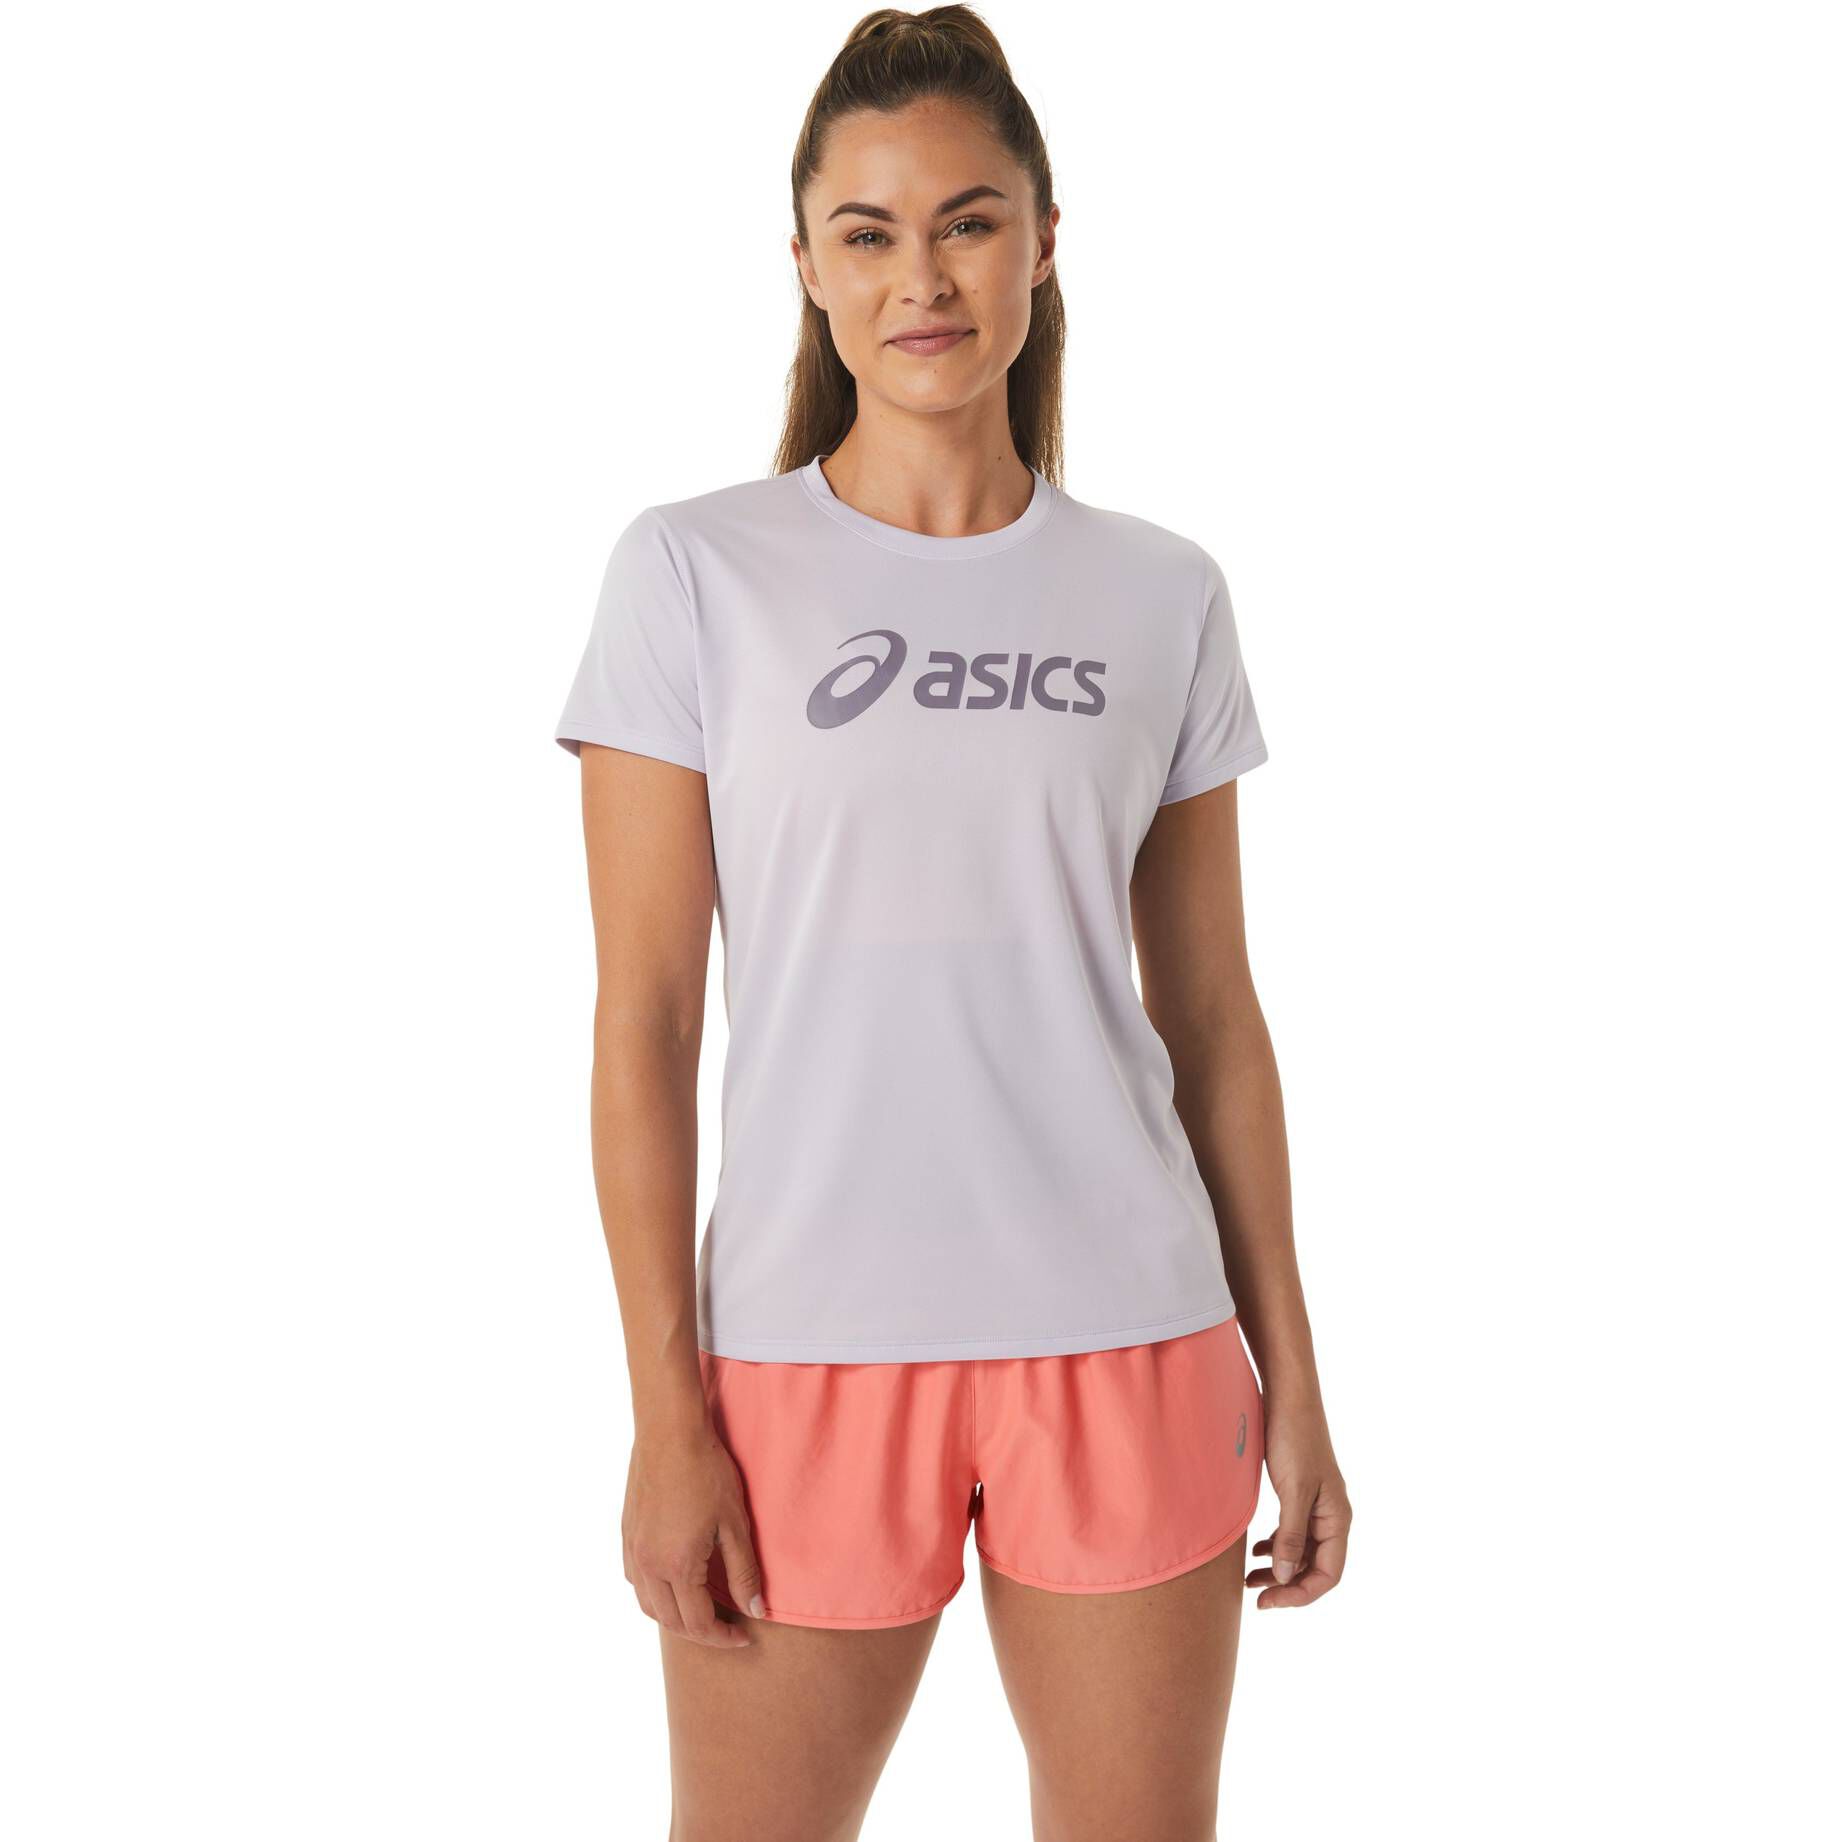 Asics Damen Laufshirt CORE kaufen | engelhorn